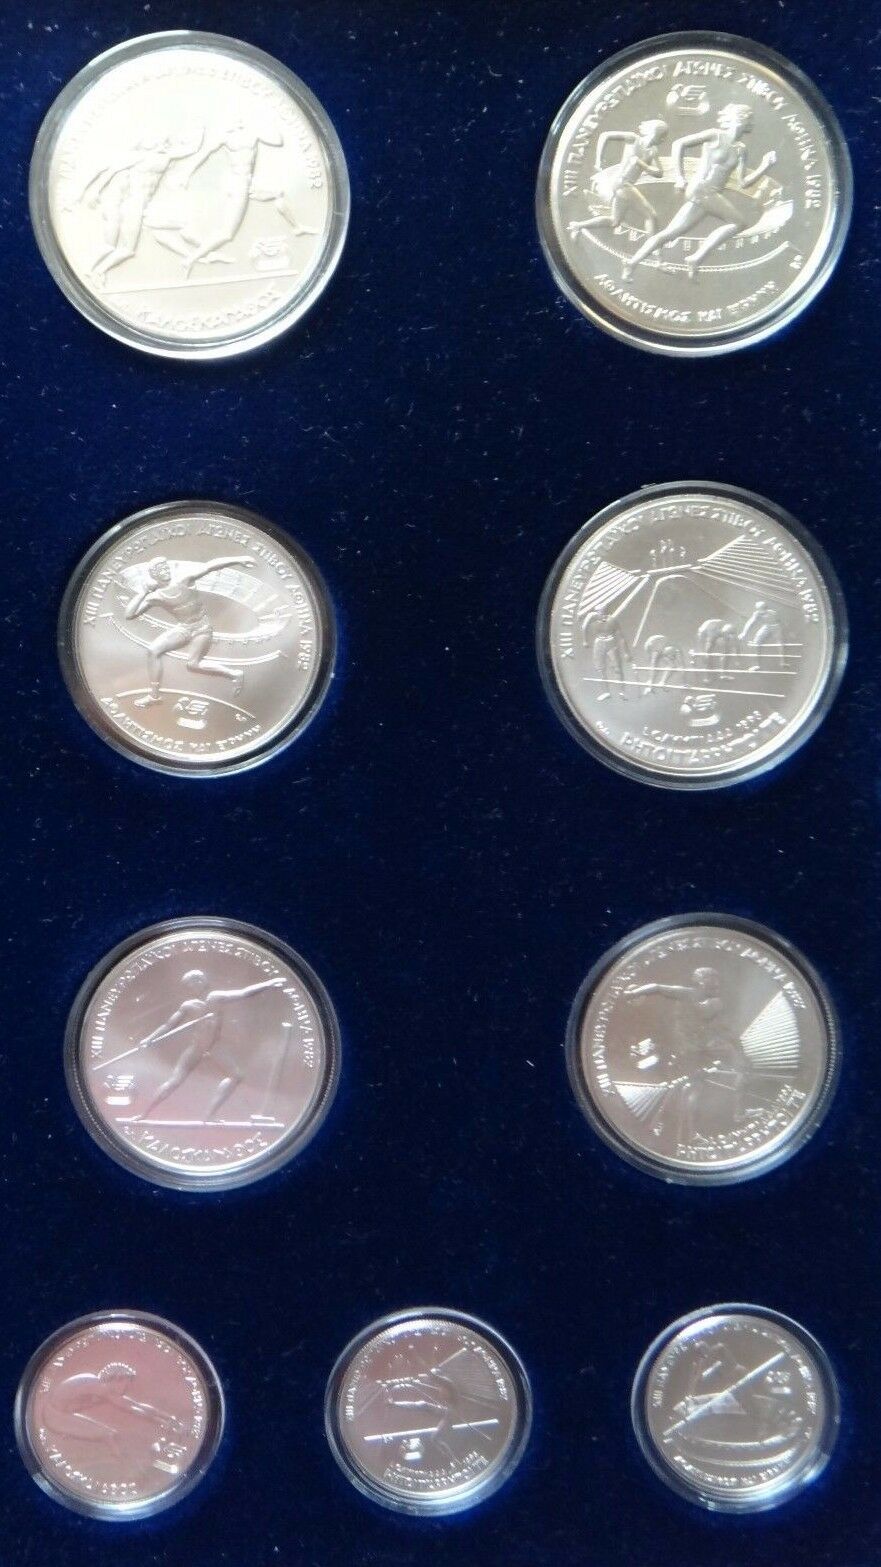 Grecia 9 Set Moneda Plata 1982 Juegos Olímpicos UNC Mint Rare Nr - $317.51